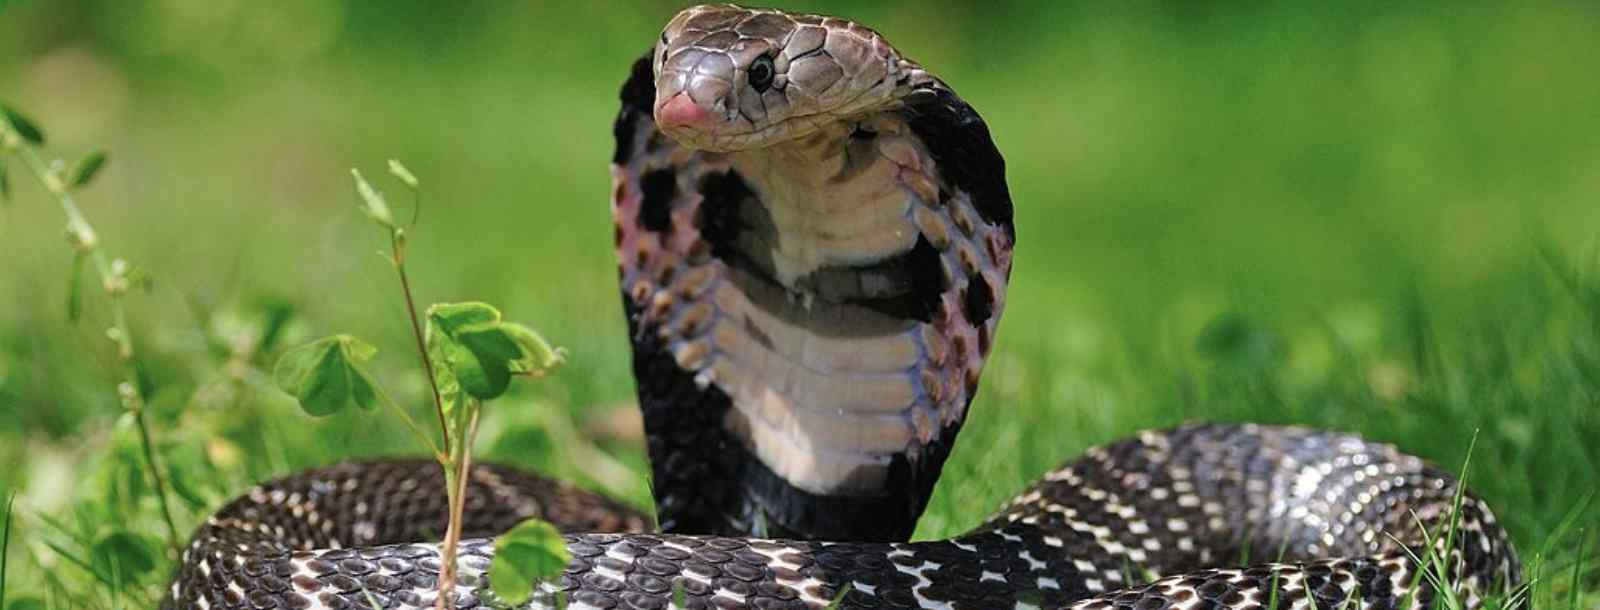 眼镜蛇在眼镜发明出来之前叫什么蛇